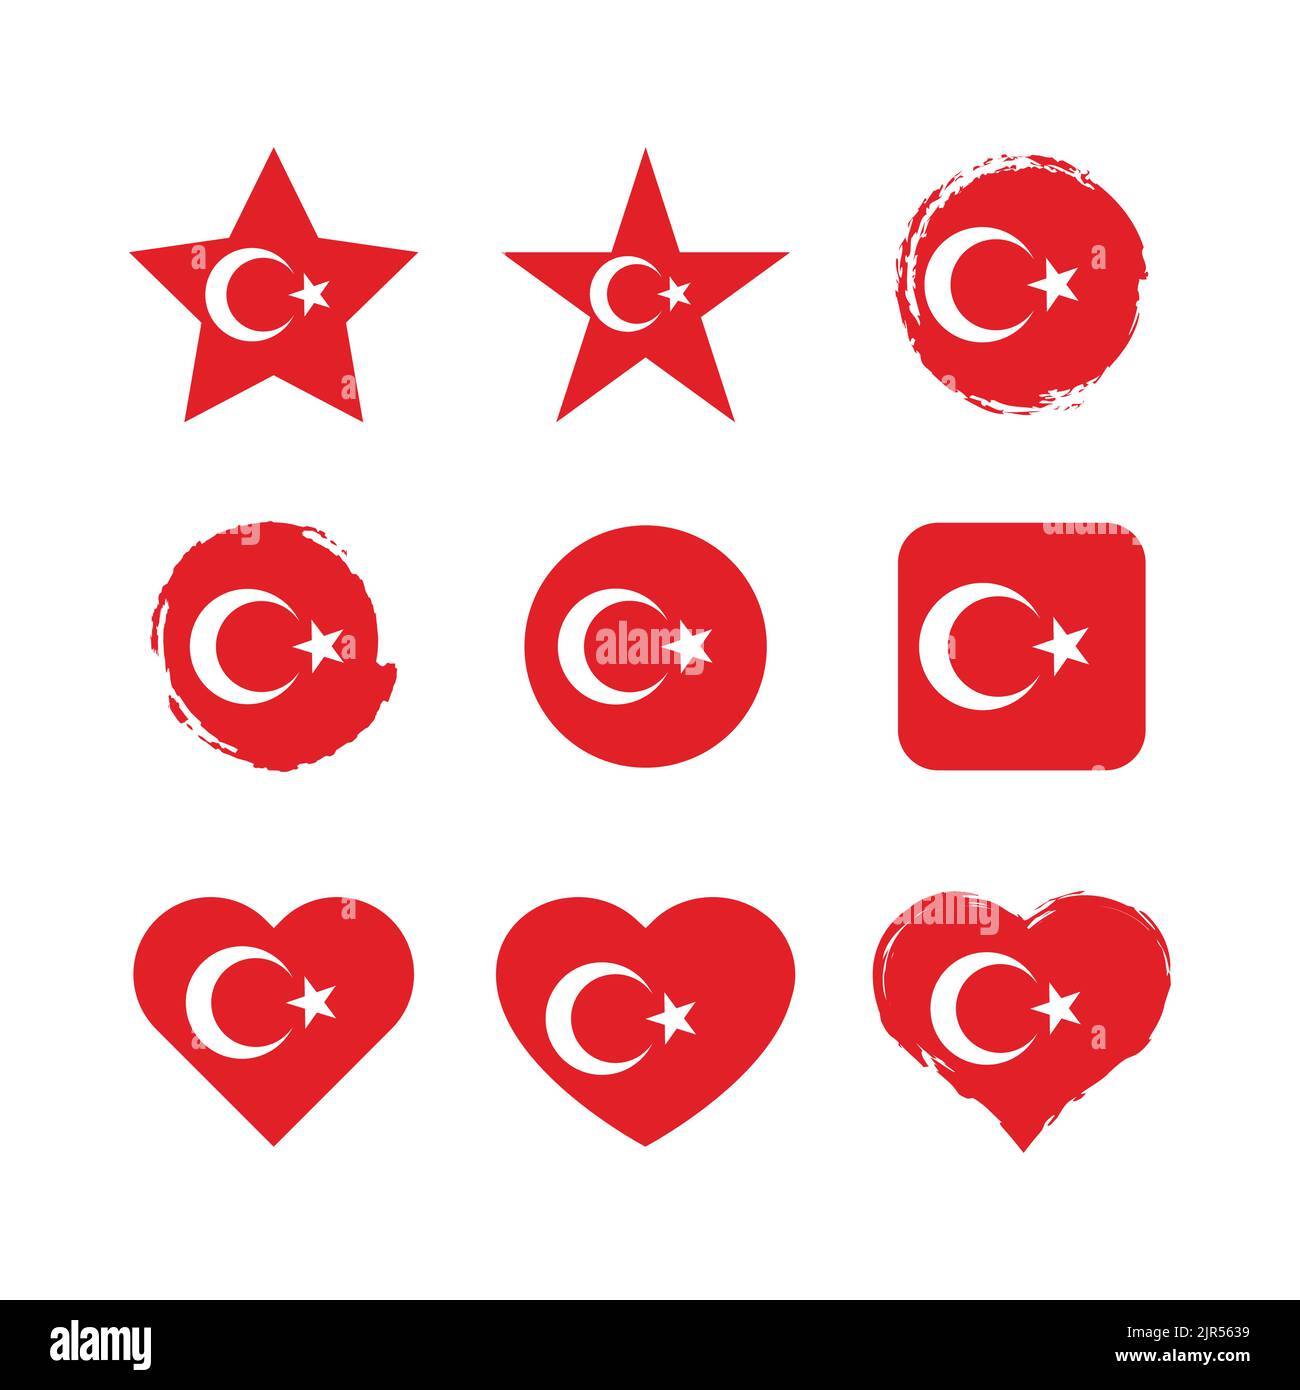 Türkei Vektorkreis und Herzflagge gesetzt. Türkische trockene Pinsel und Grunge-Effekt Stempel Flaggen. Stock Vektor